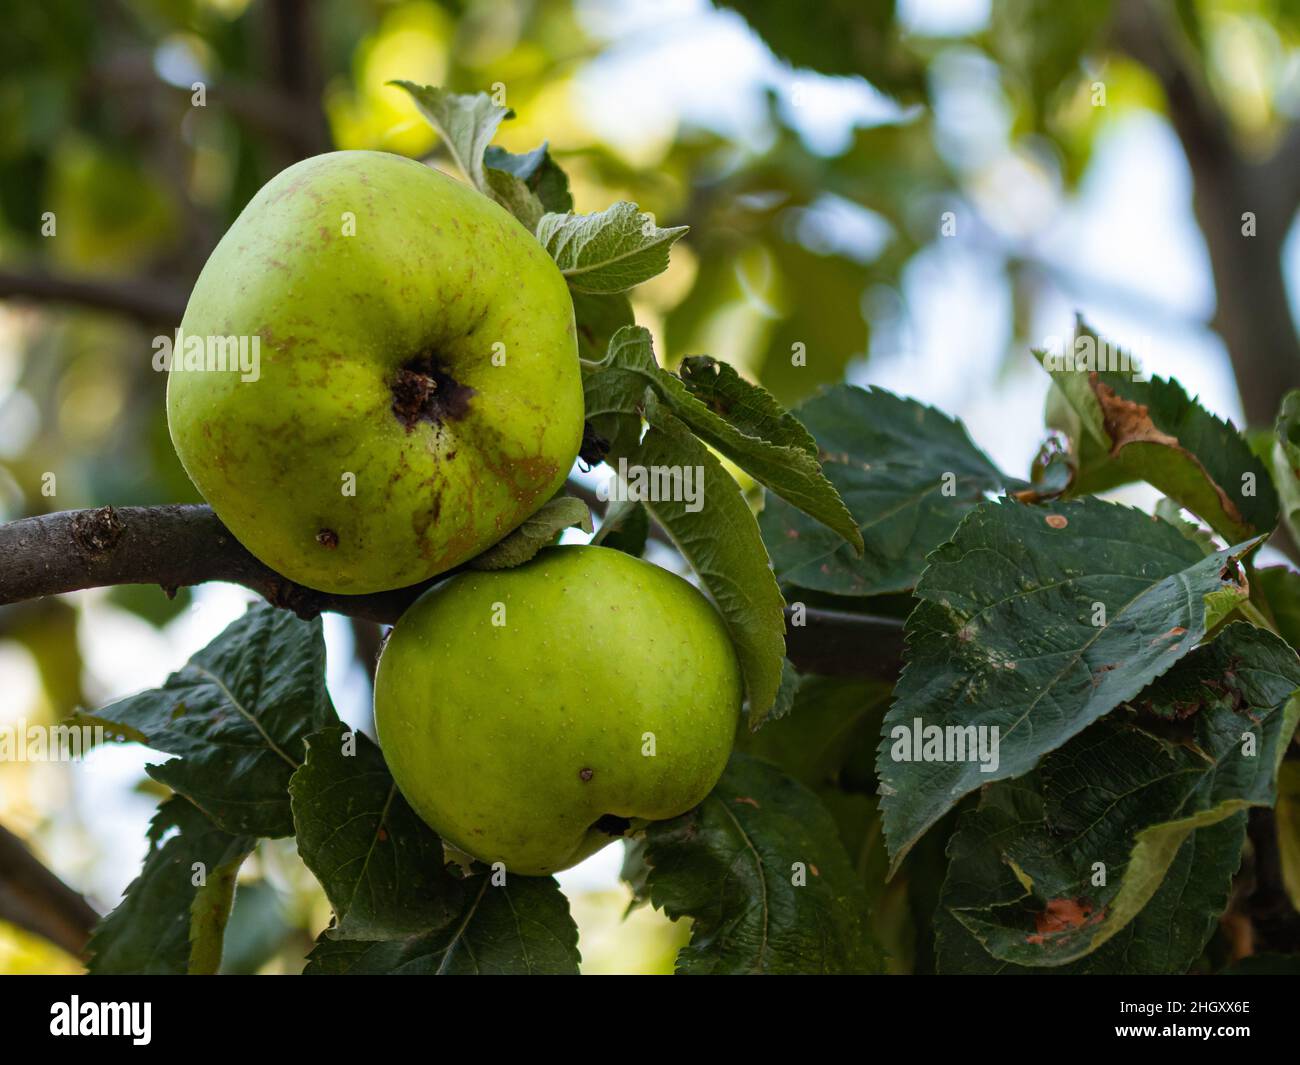 green apple on apple tree Stock Photo